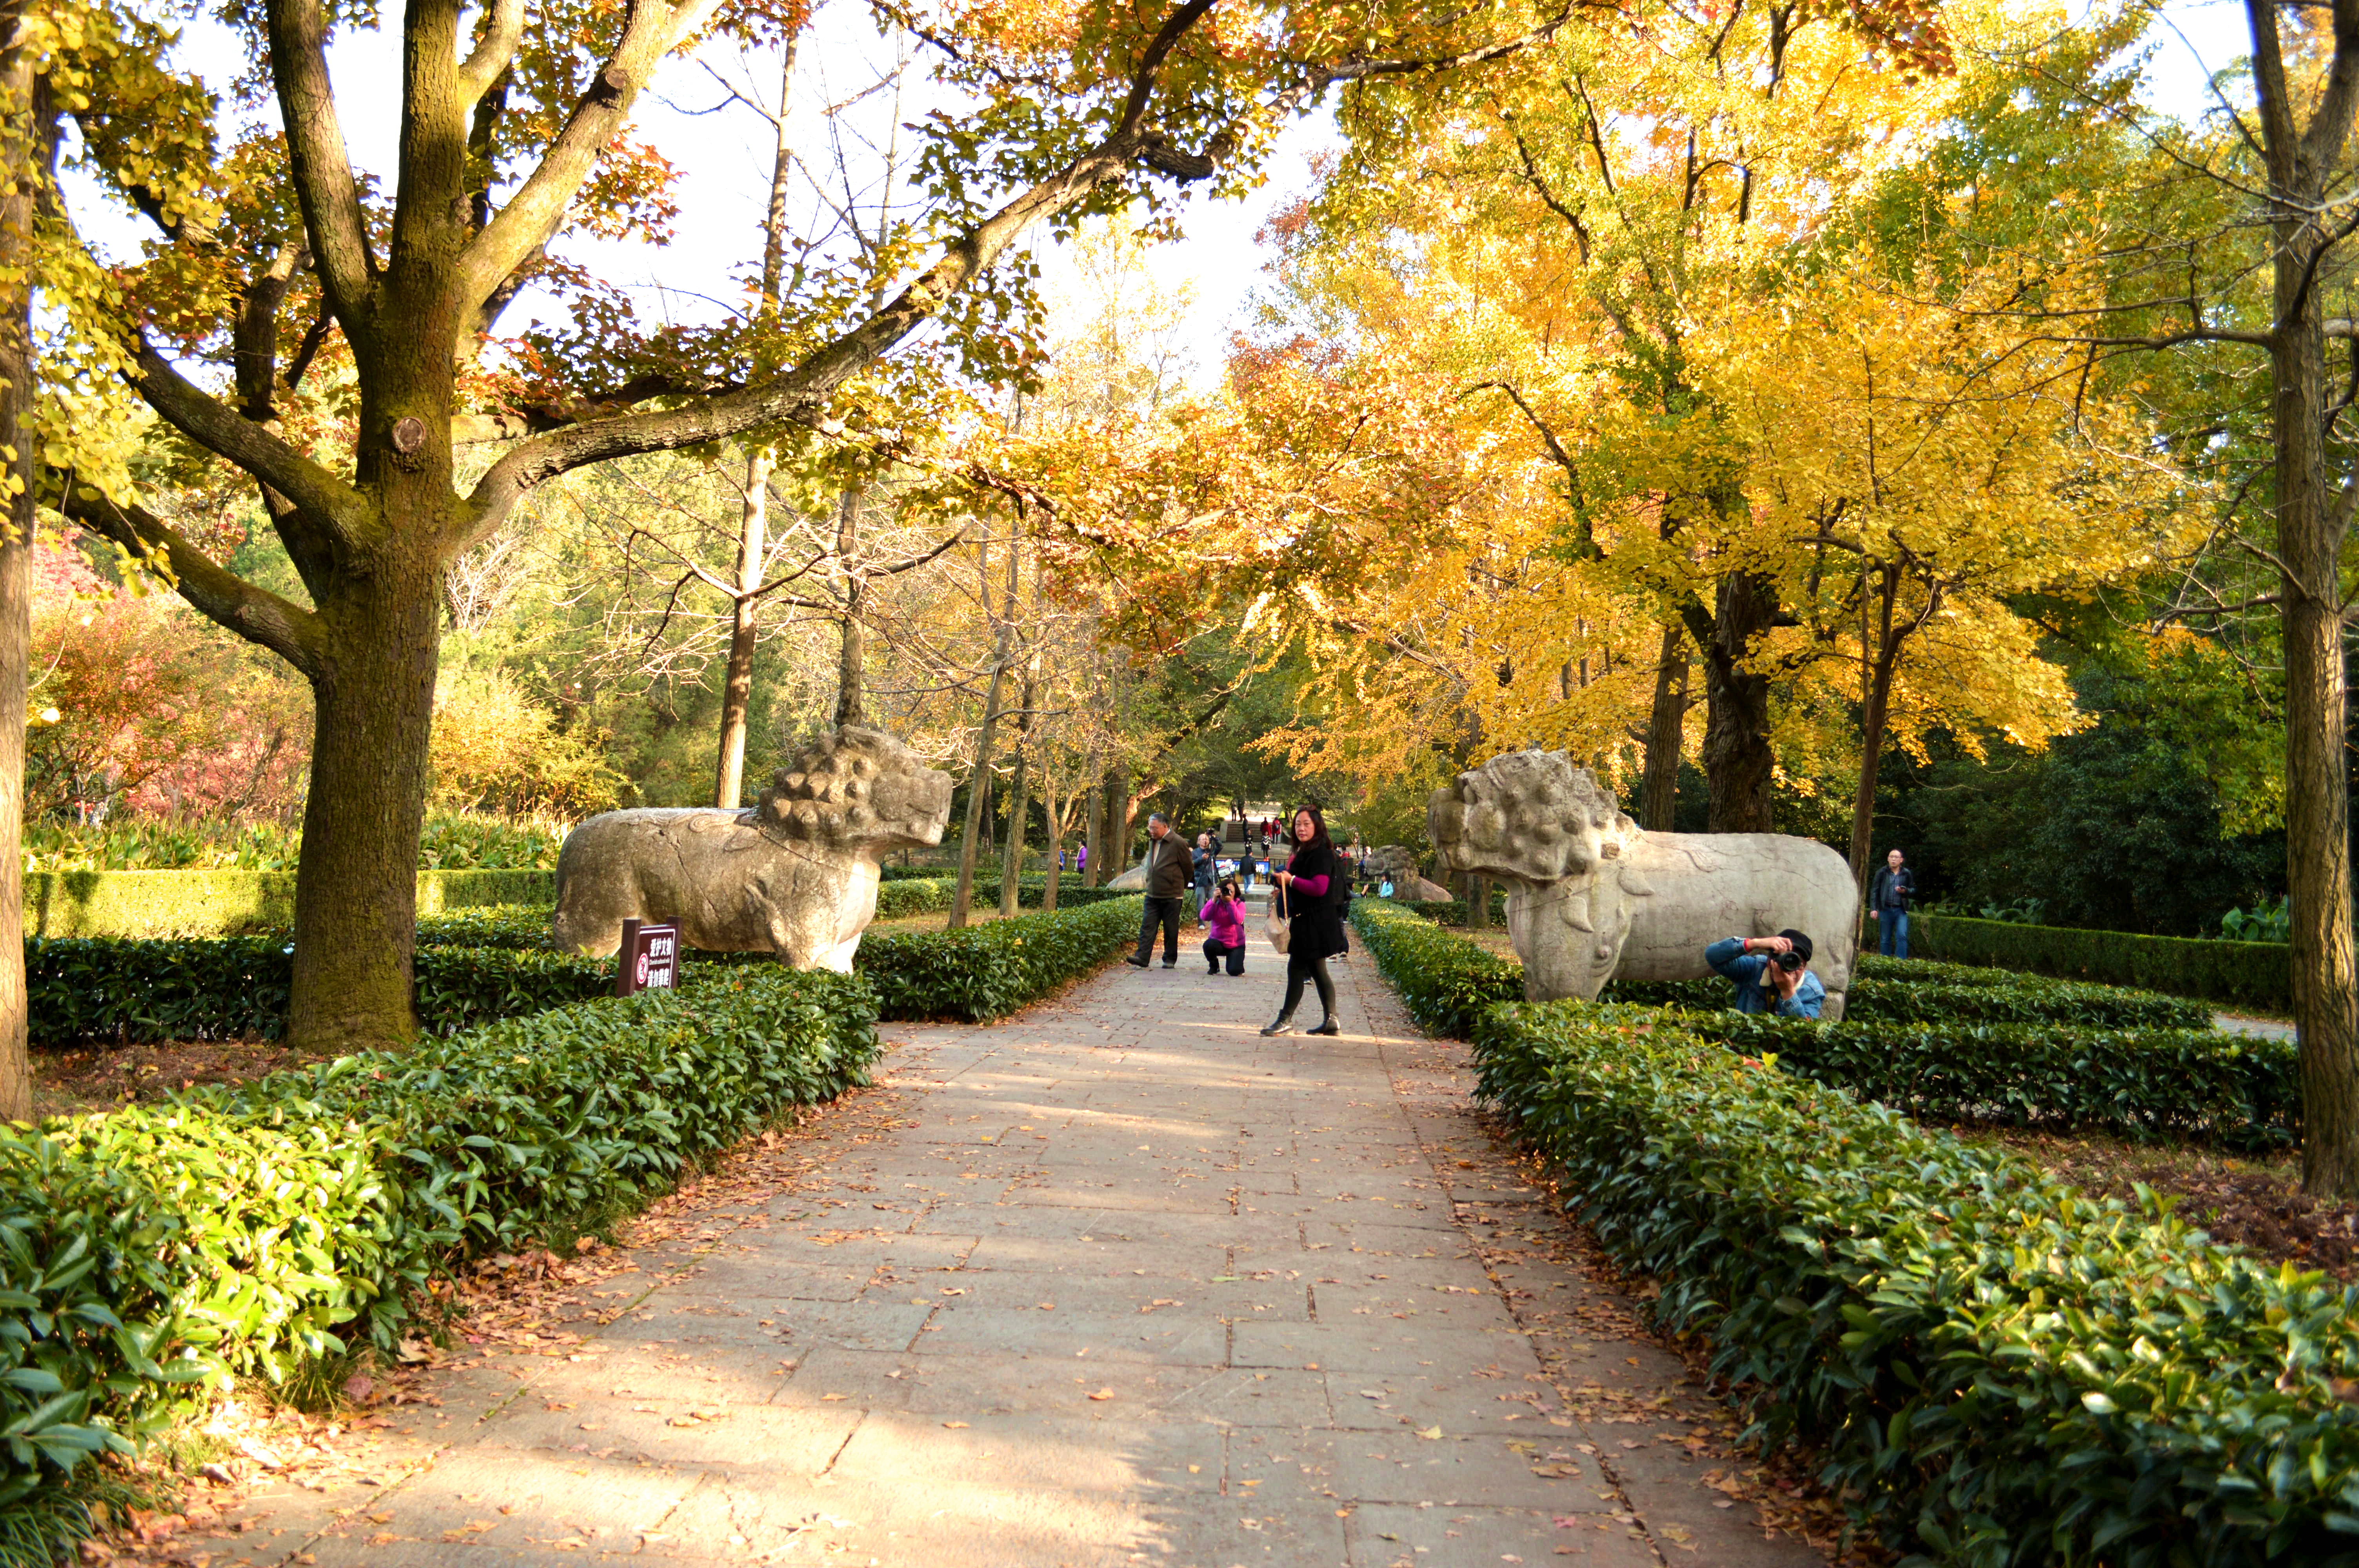 【携程攻略】南京明孝陵景点,作为南京人，秋季的明孝陵也是魅力十足。秋天一定要来明孝陵感受秋季…